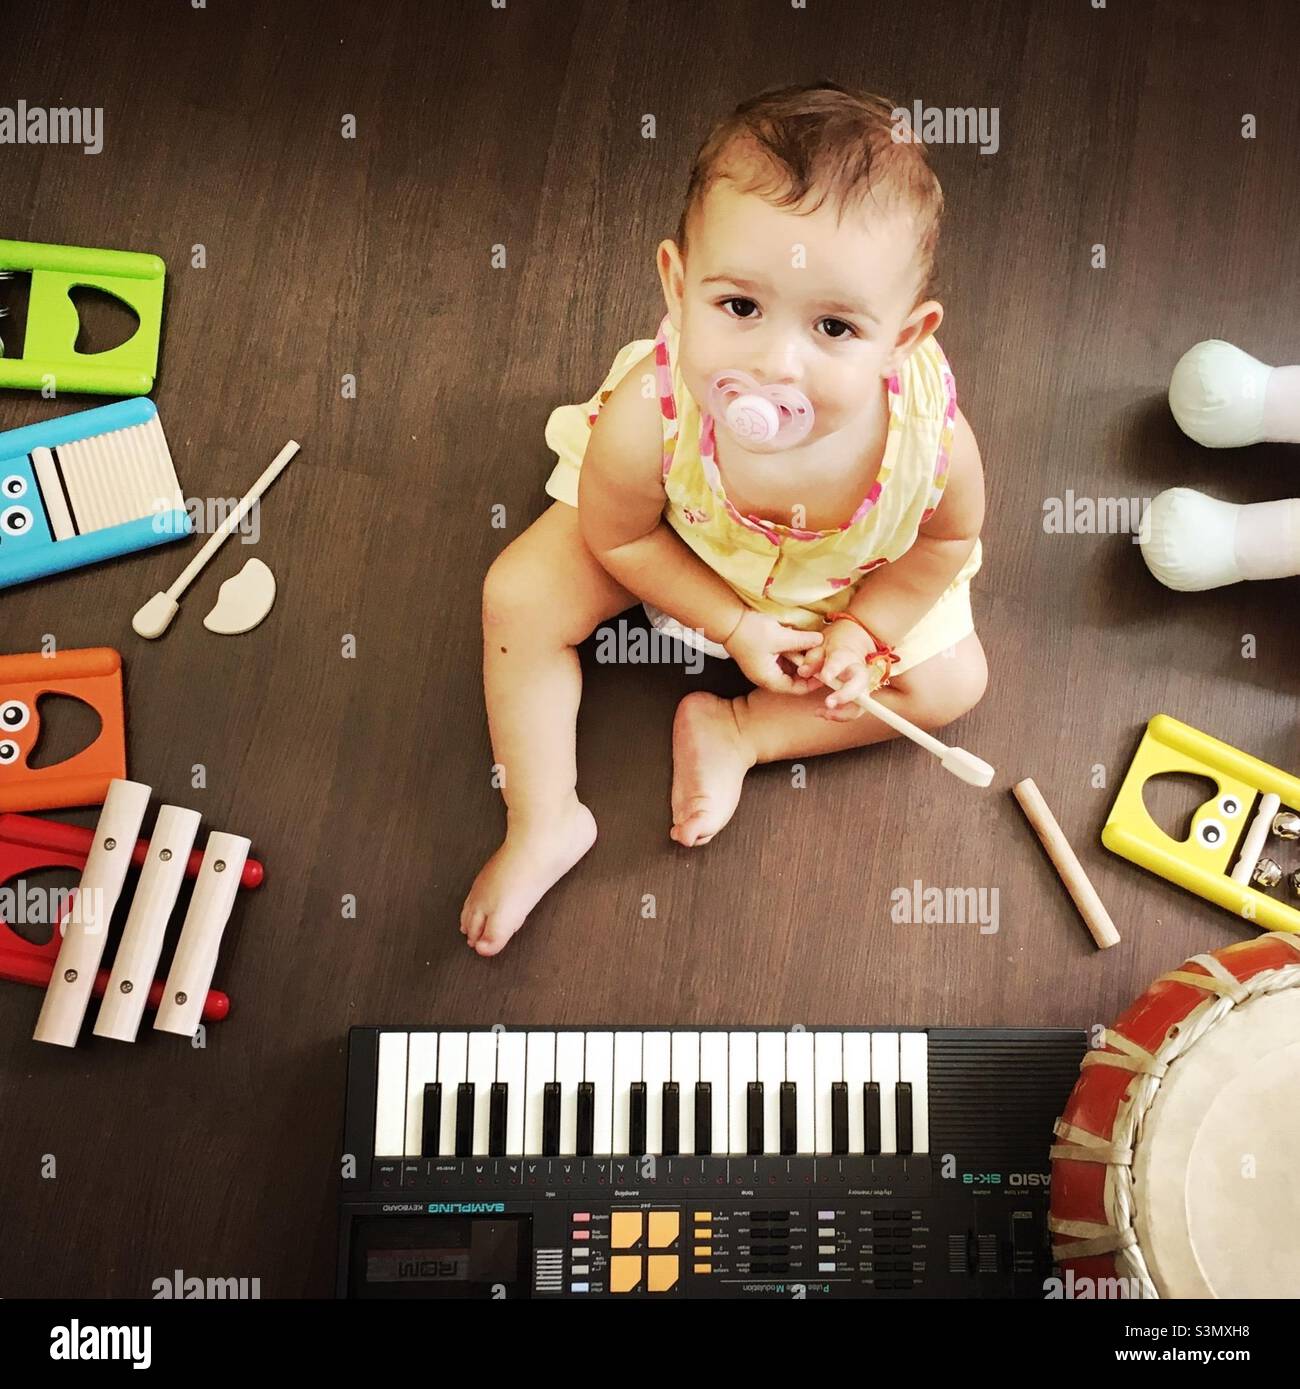 Baby girl among music instruments Stock Photo